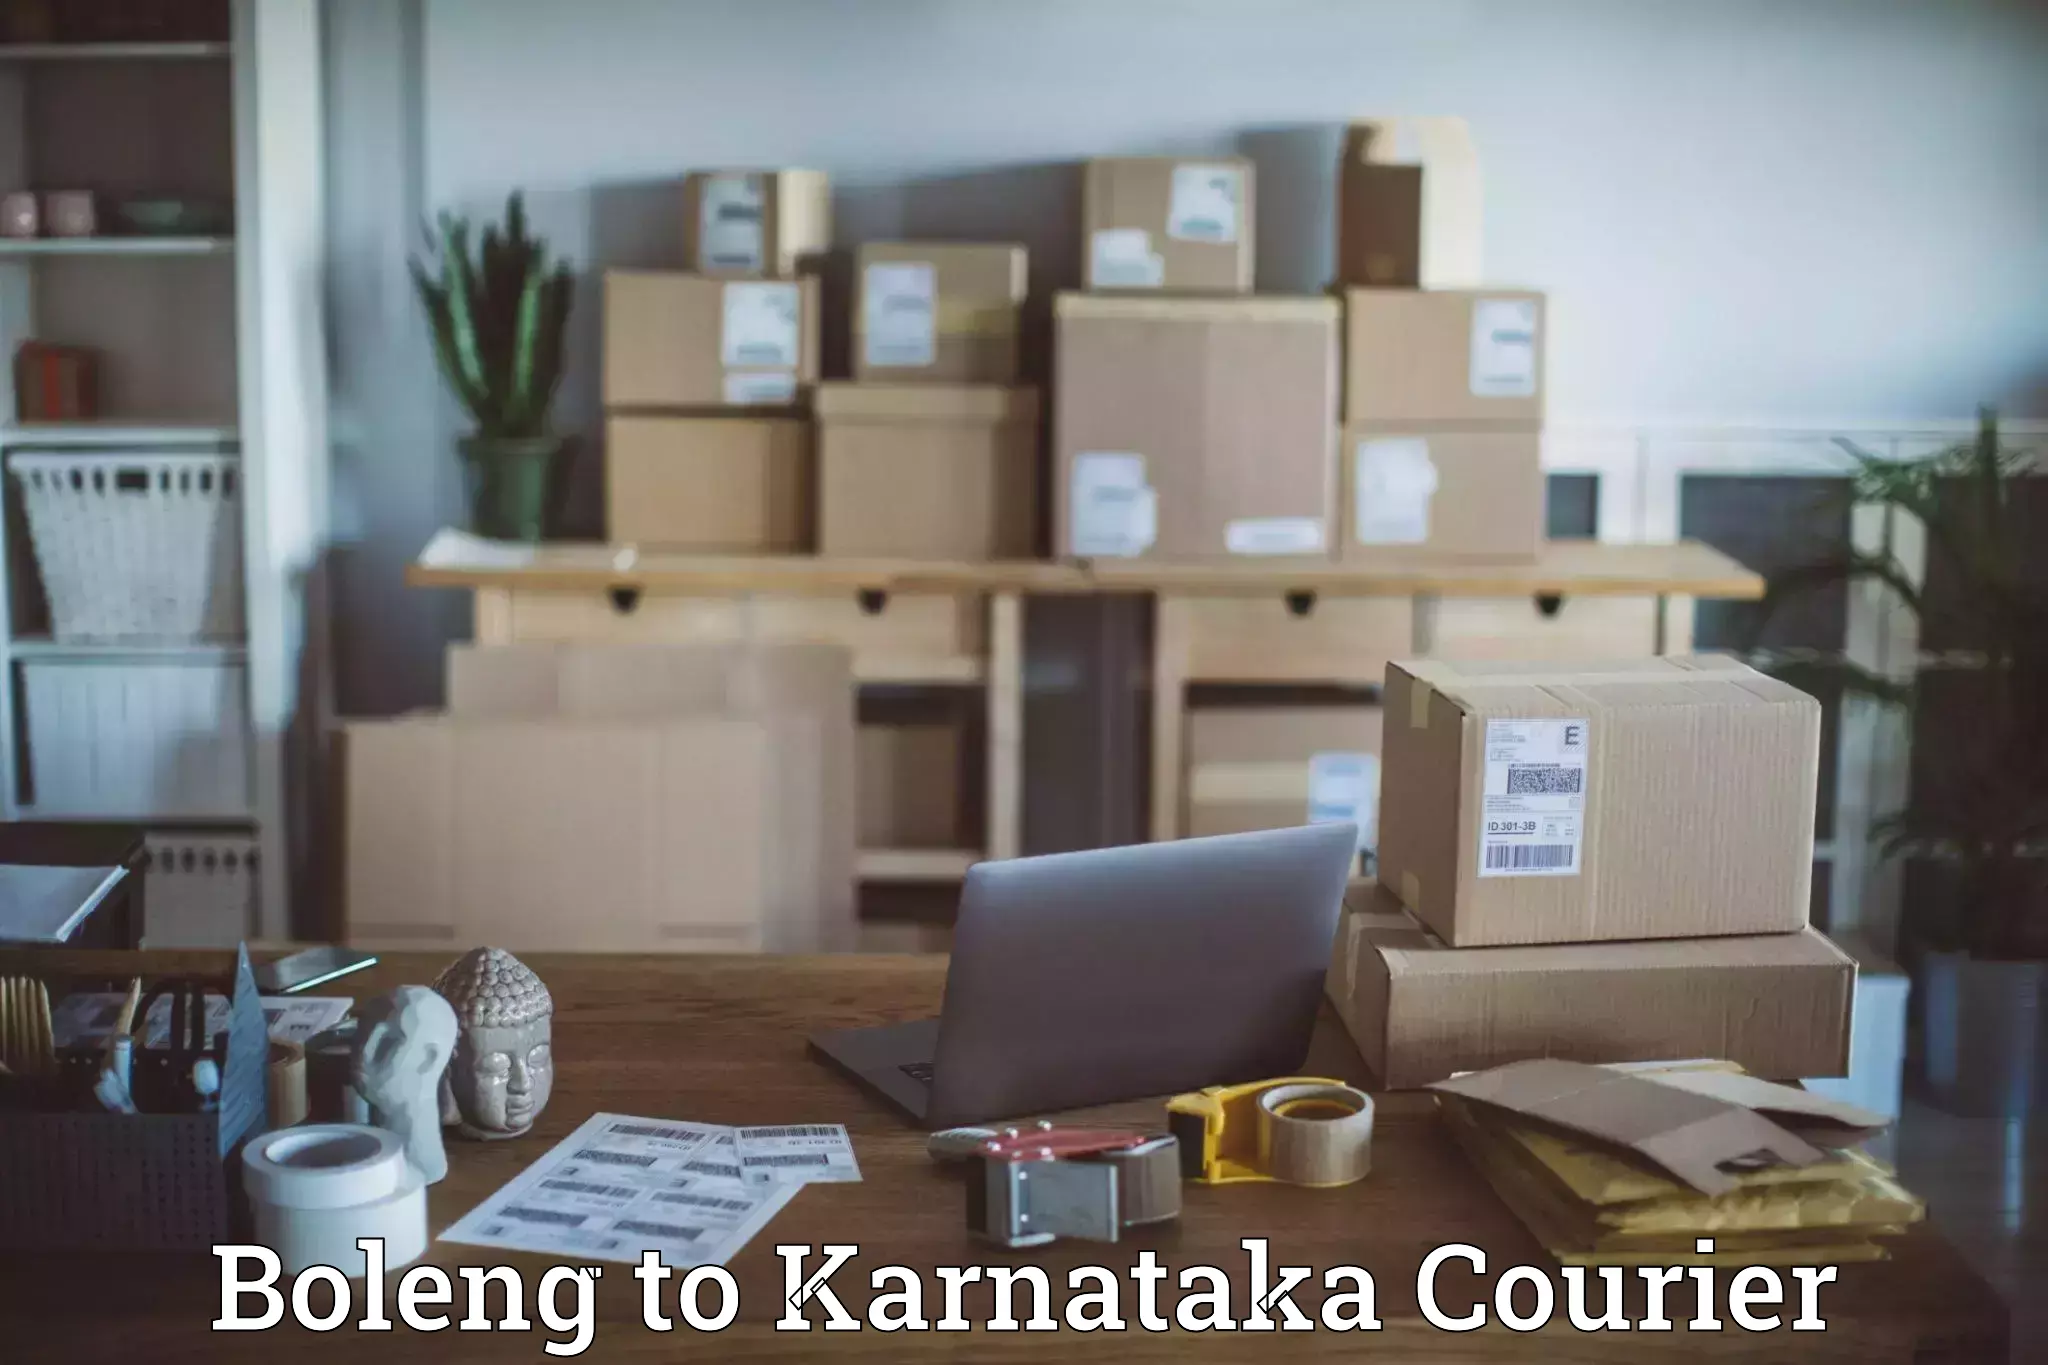 Efficient shipping operations Boleng to Karnataka